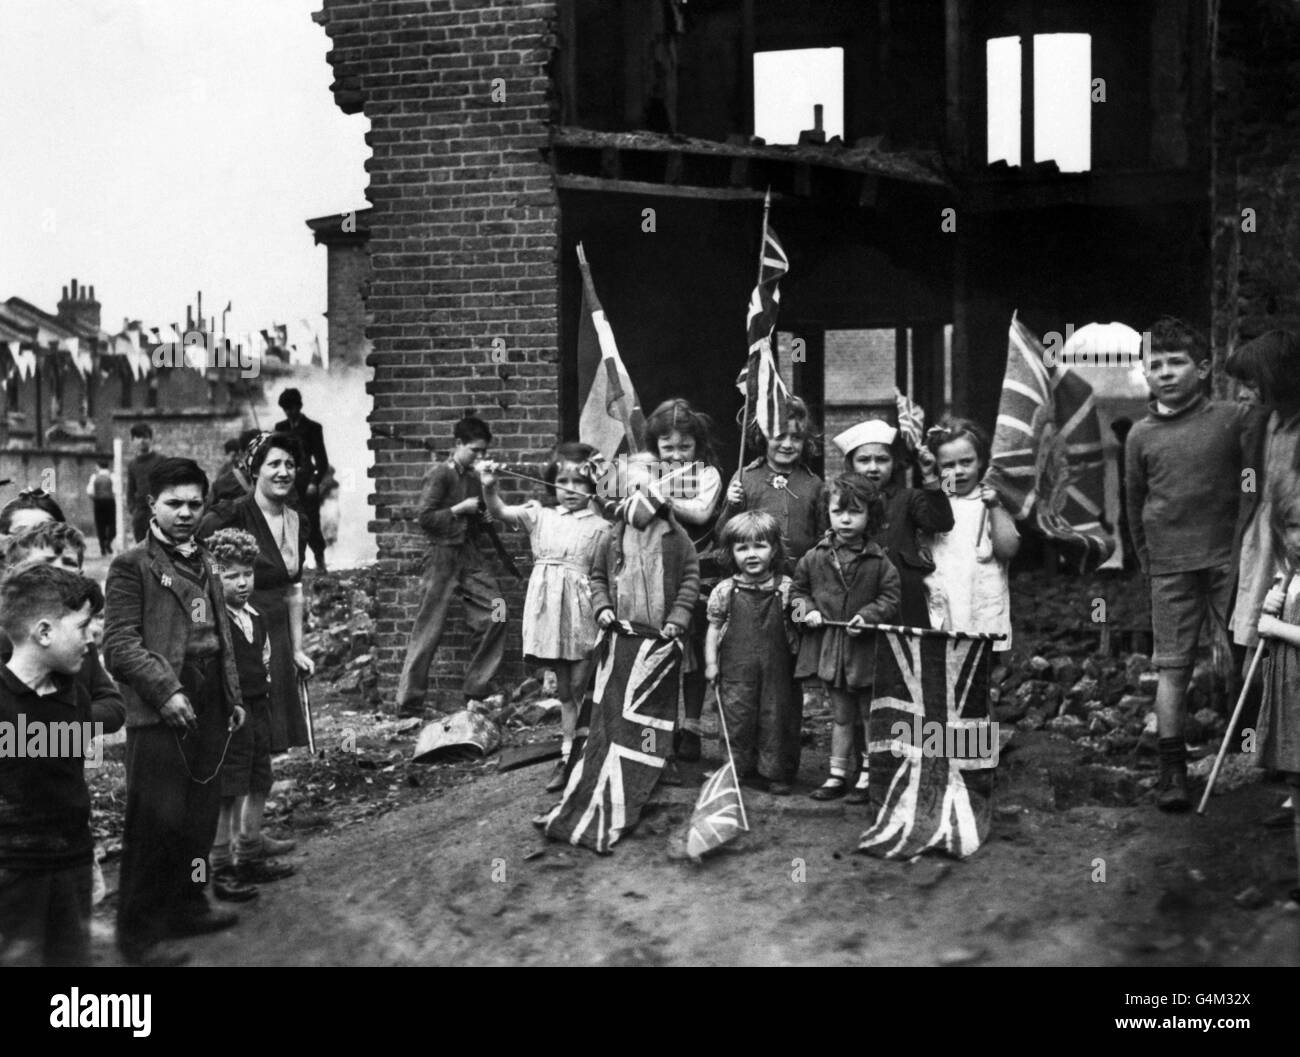 Junge Londoner feiern den VE-Day (Victory-in-Europe Day), der das Ende des Krieges in Europa markiert, inmitten der Ruinen ihres Hauses in Battersea. Stockfoto